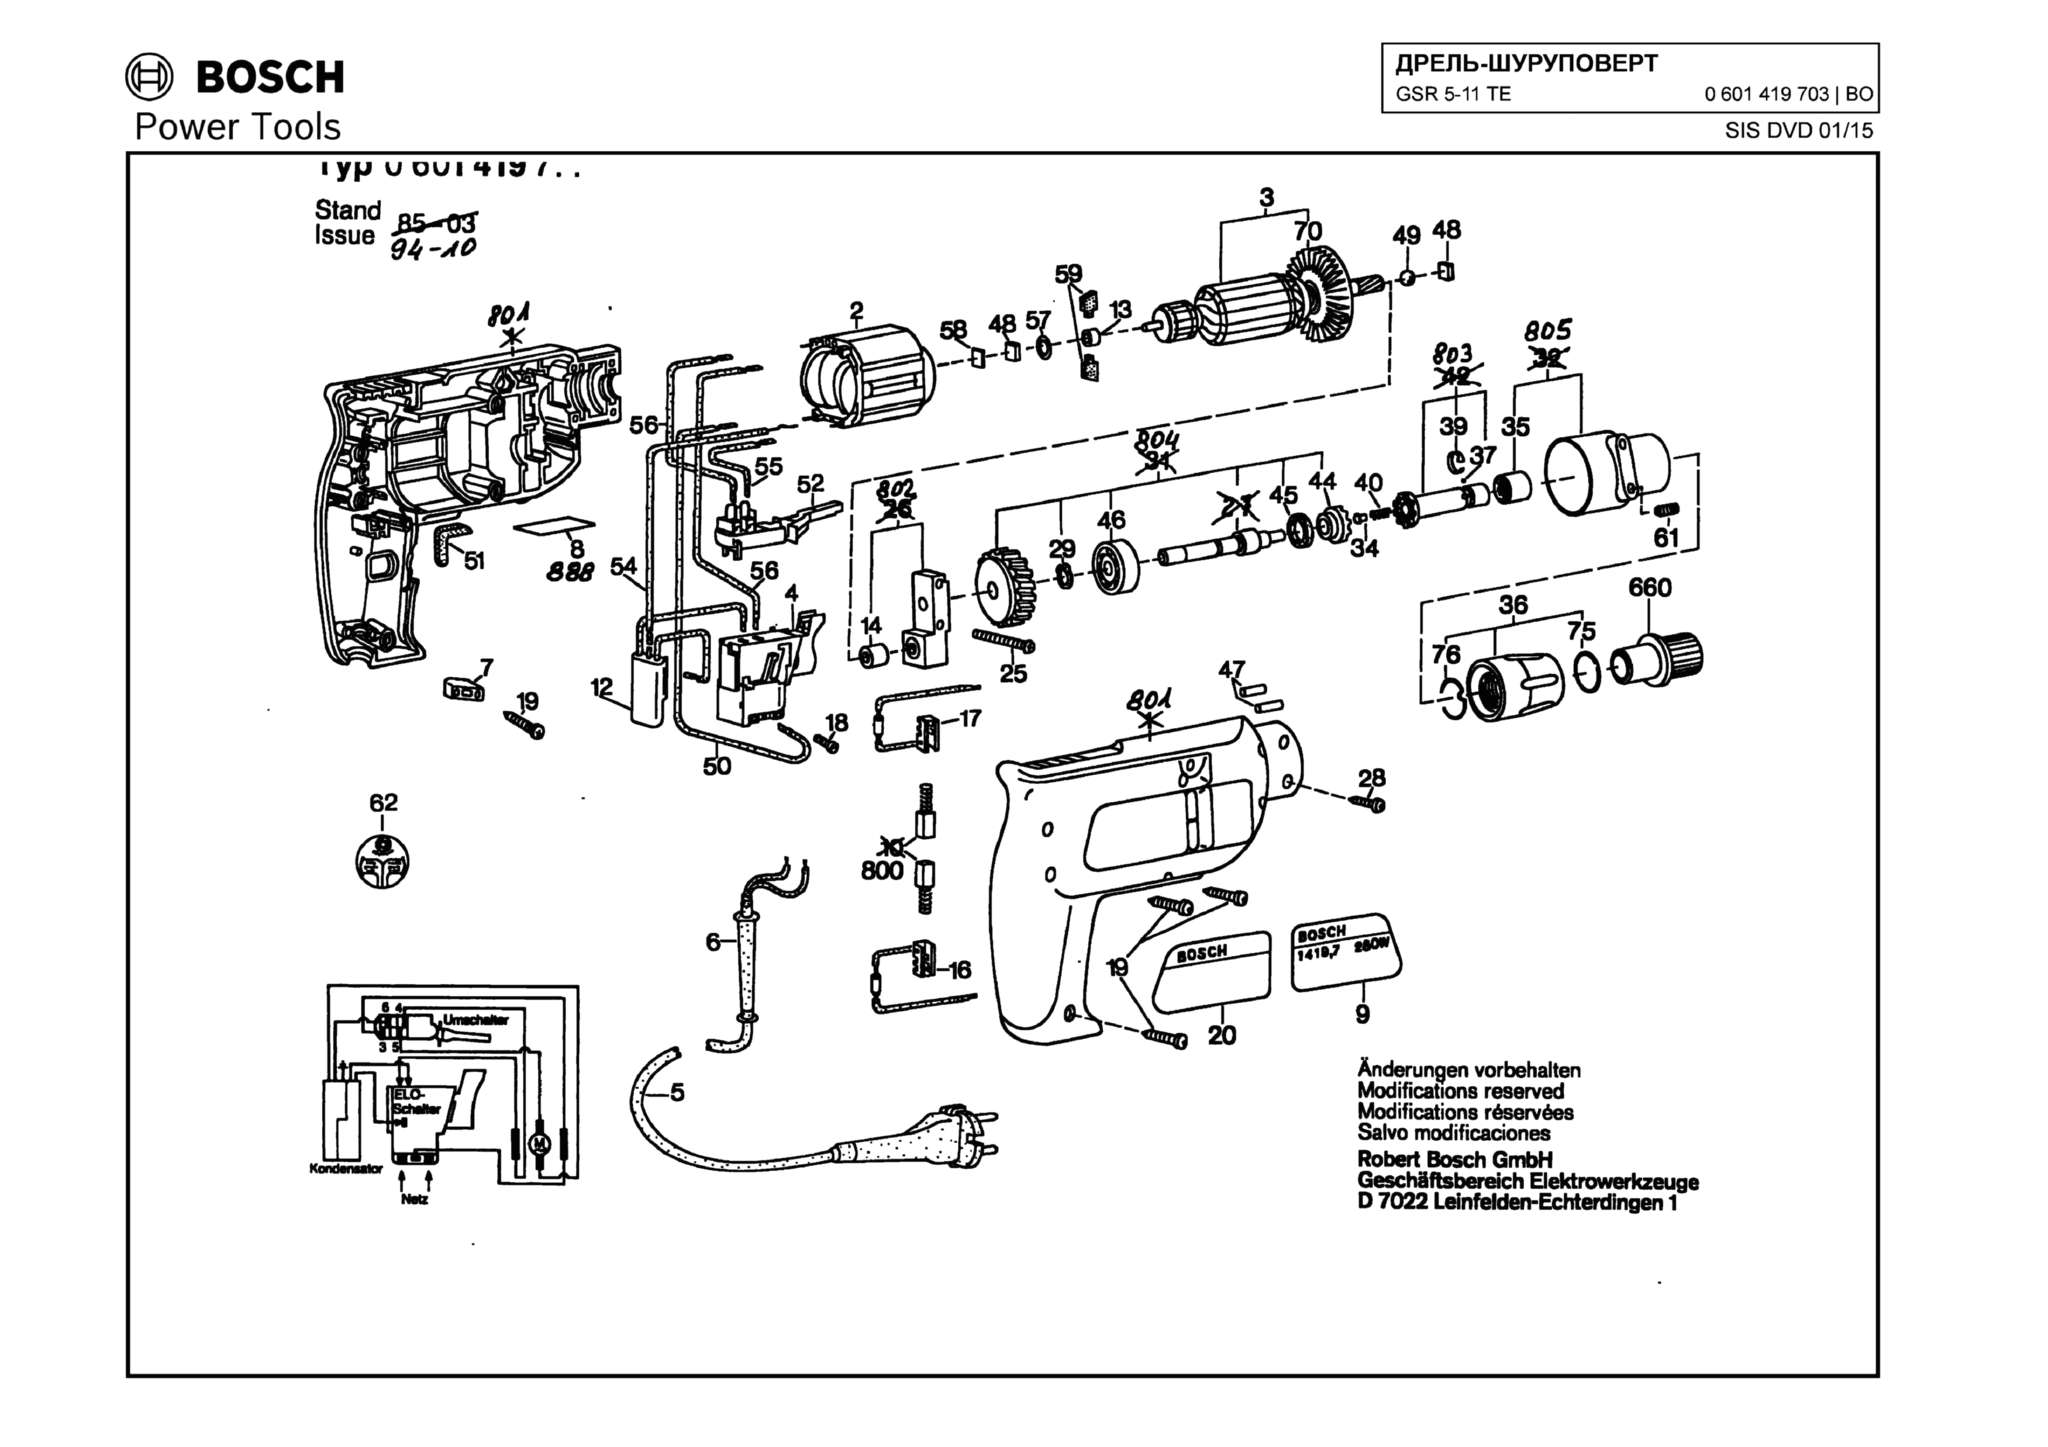 Запчасти, схема и деталировка Bosch GSR 5-11 TE (ТИП 0601419703)